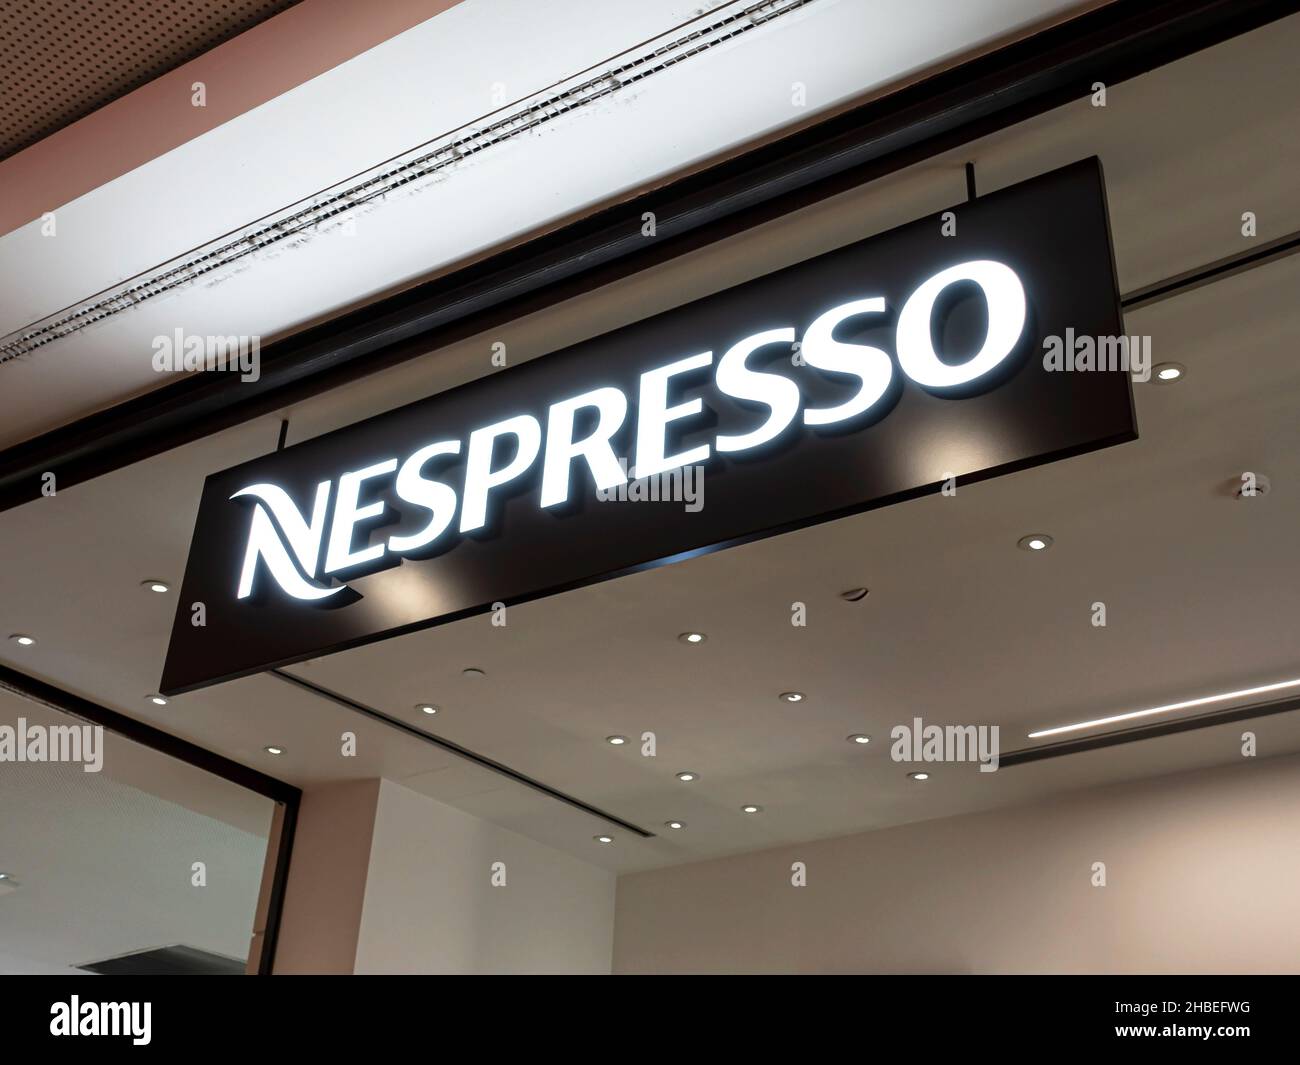 Funchal, Portugal - 23. Oktober 2021: Nespresso-Ladenschild. Nespresso ist eine operative Einheit der Nestlé-Gruppe mit Sitz in Lausanne, Schweiz. Stockfoto